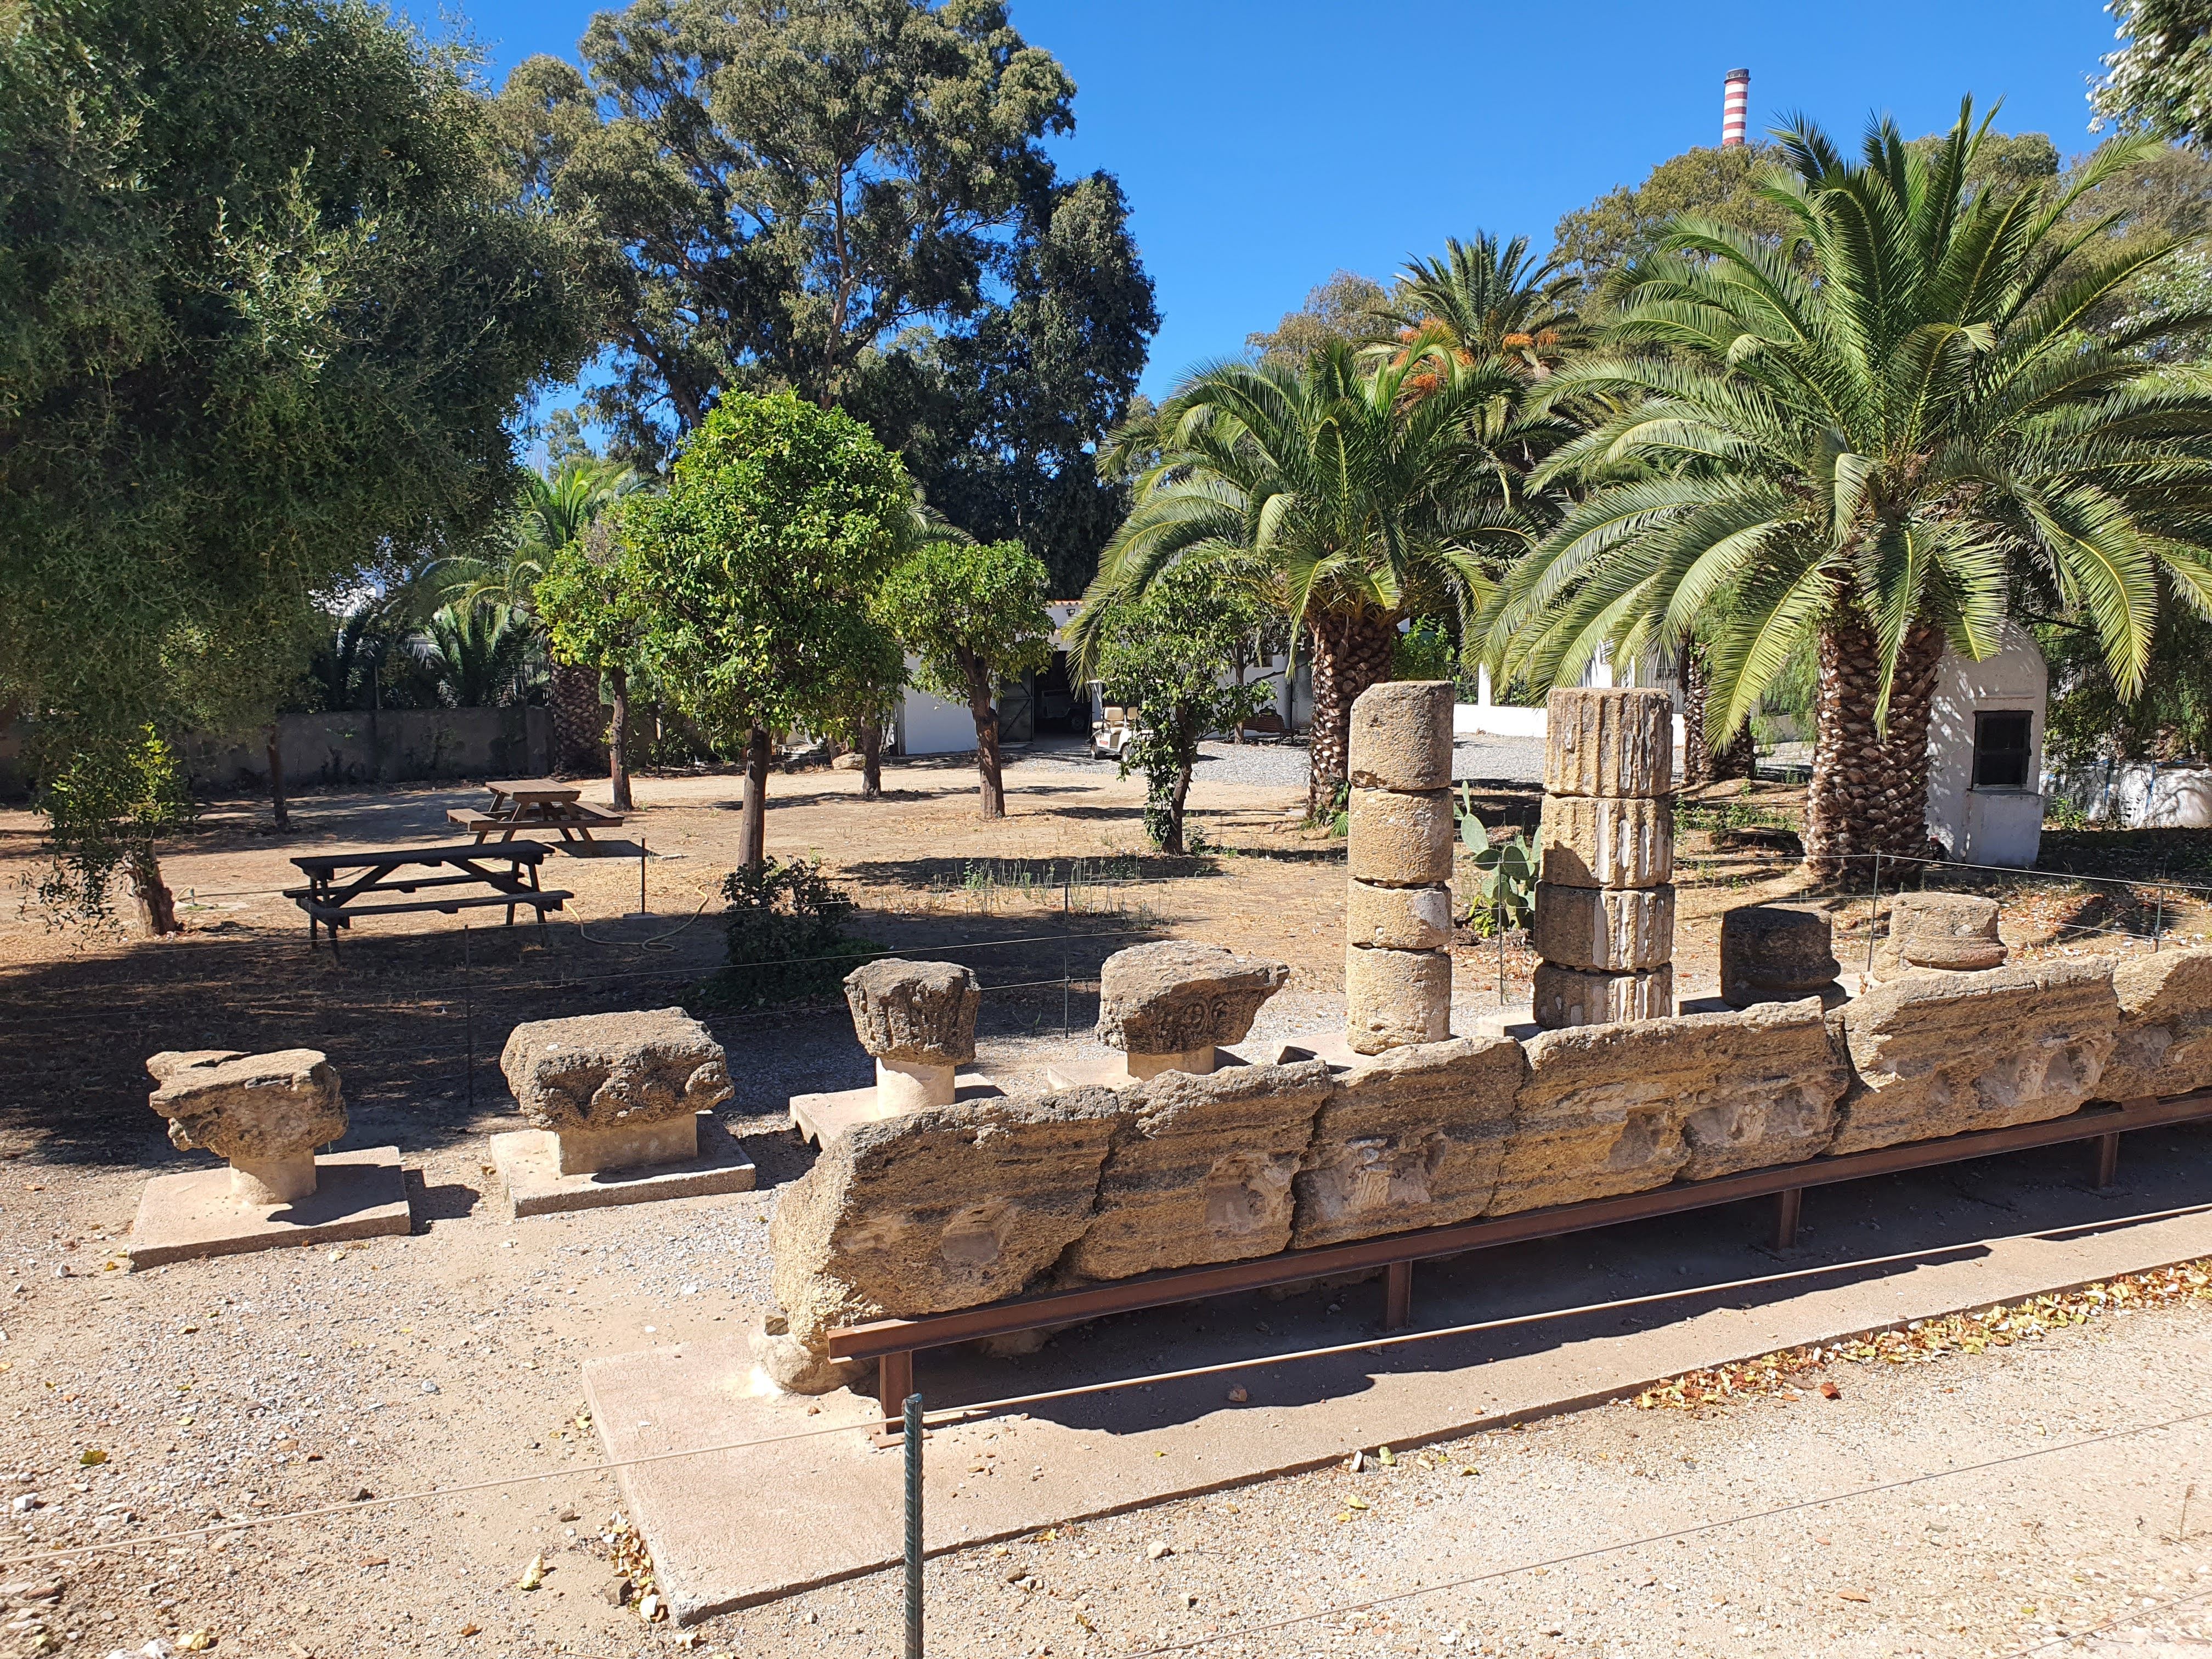 Enclave arqueológico de Carteia en Guadarranque, San Roque.